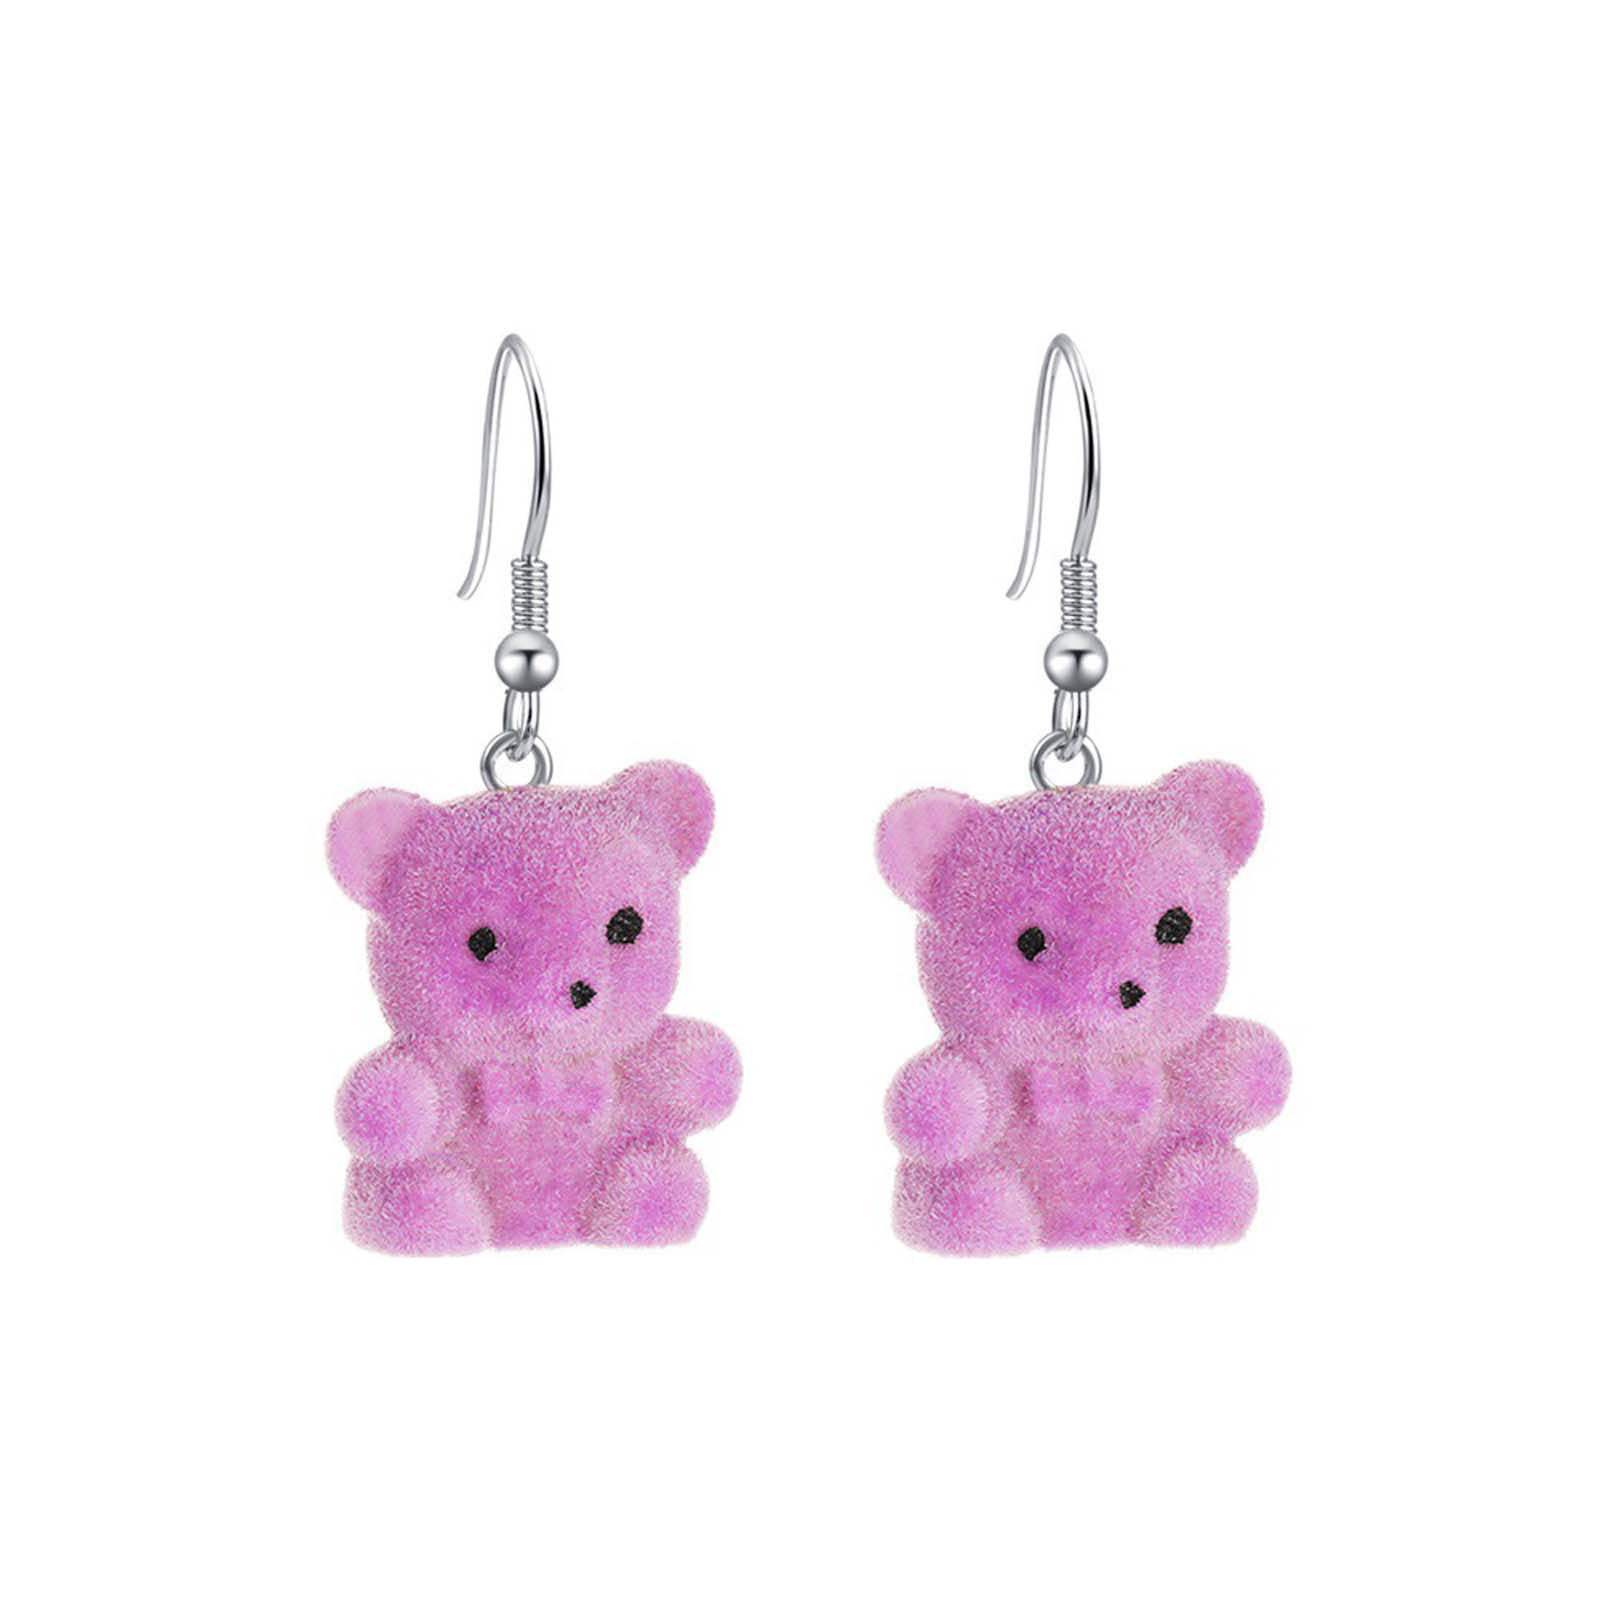 CUTE LITTLE TEDDY BEAR GIRLS DROP EARRINGS Silver plated hooks in Gift Bag  Jewellery & Watches Fashion YA9896546